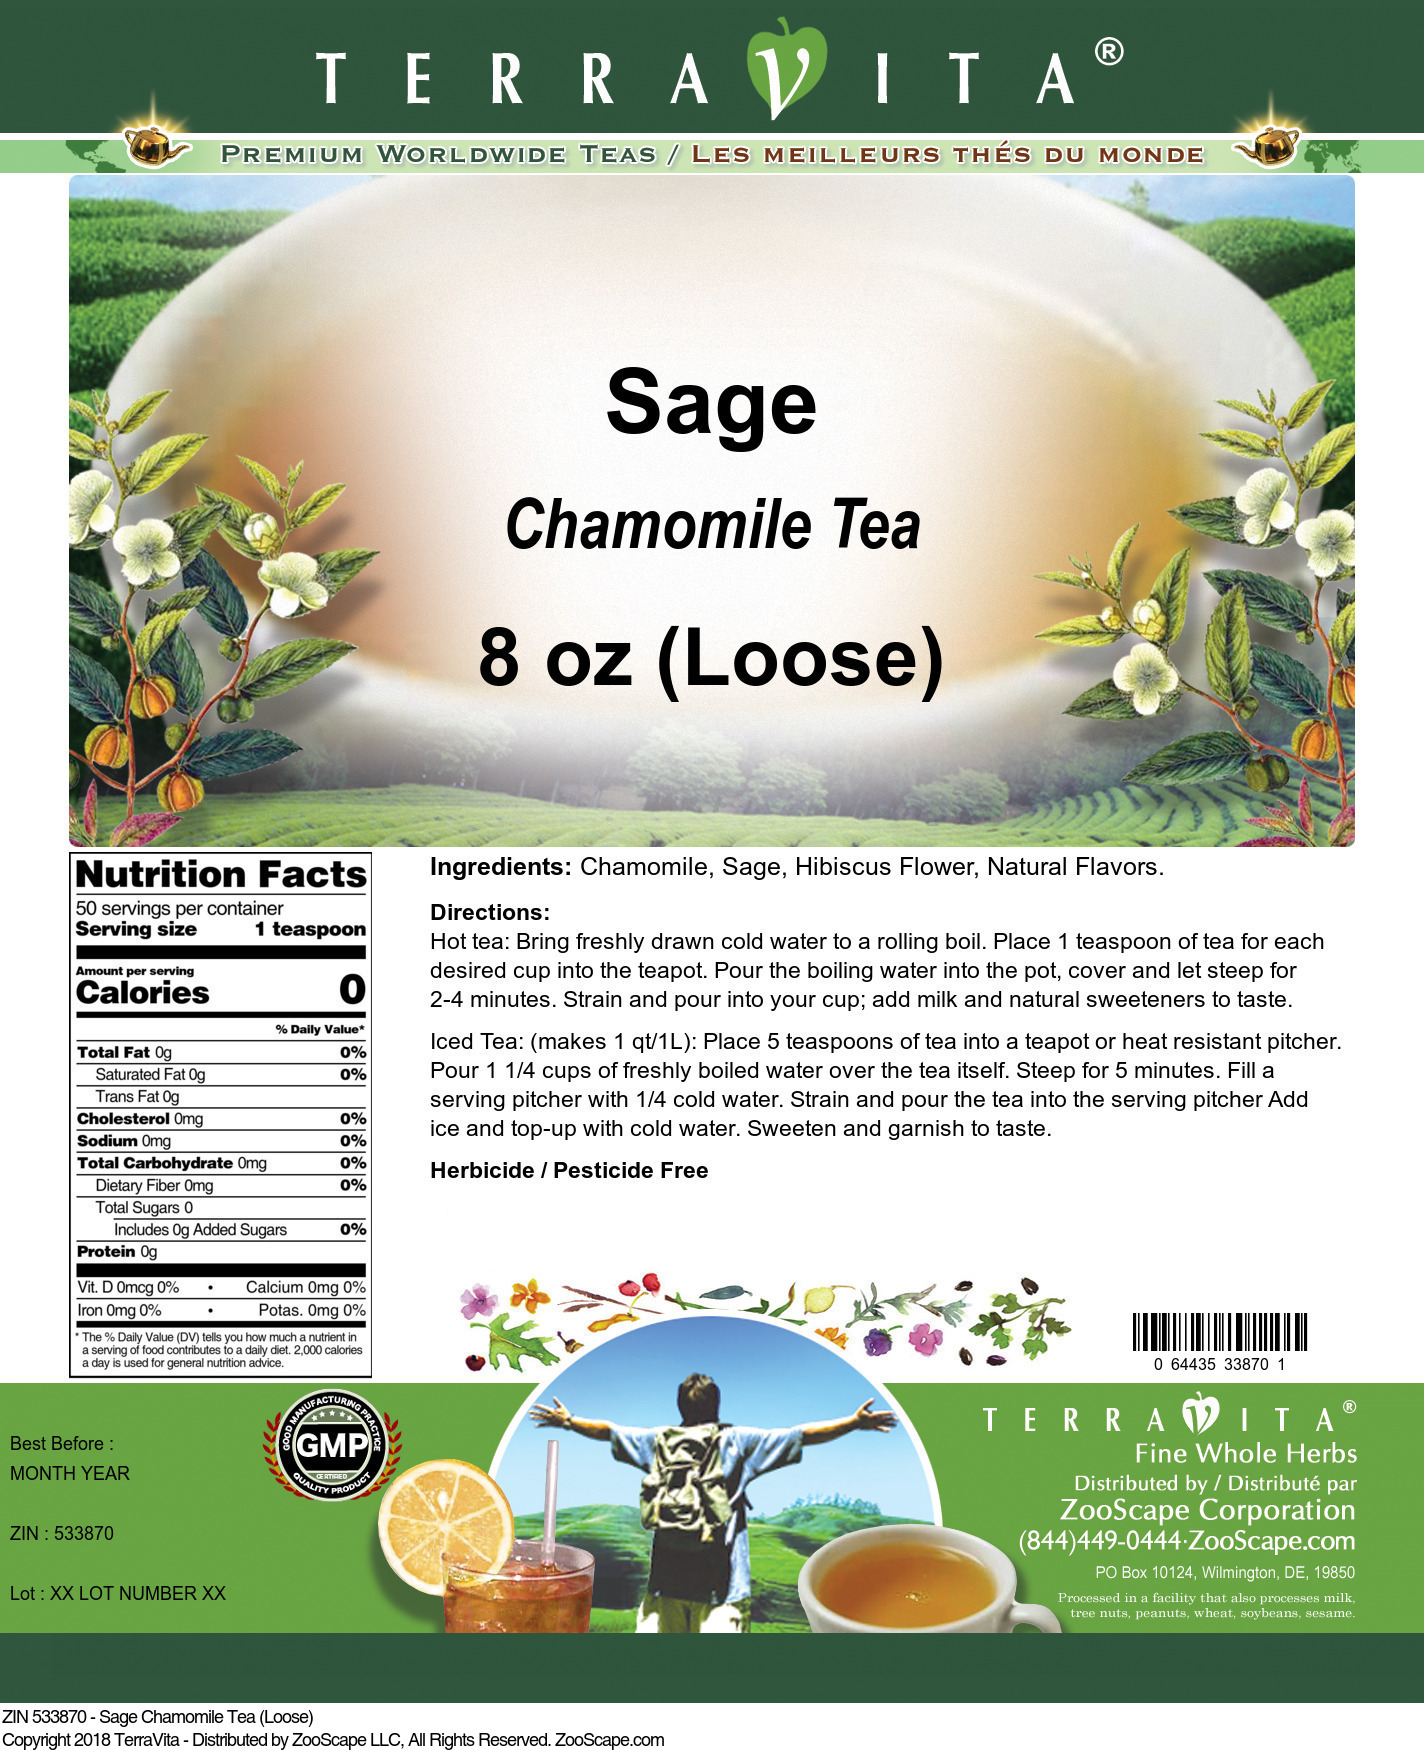 Sage Chamomile Tea (Loose) - Label